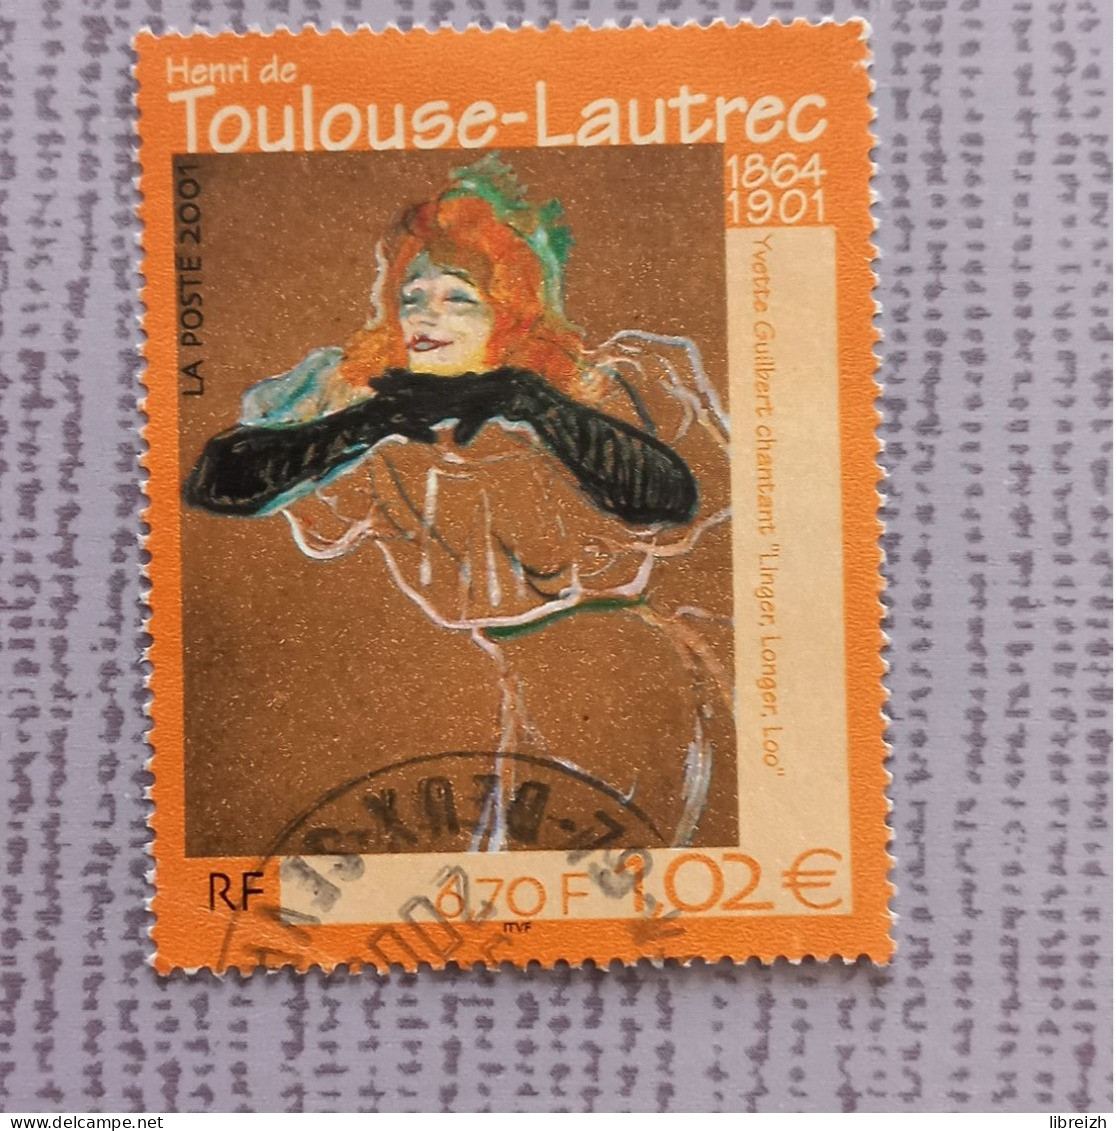 Henri De Toulouse-Lautrec N° 3421  Année 2001 - Used Stamps